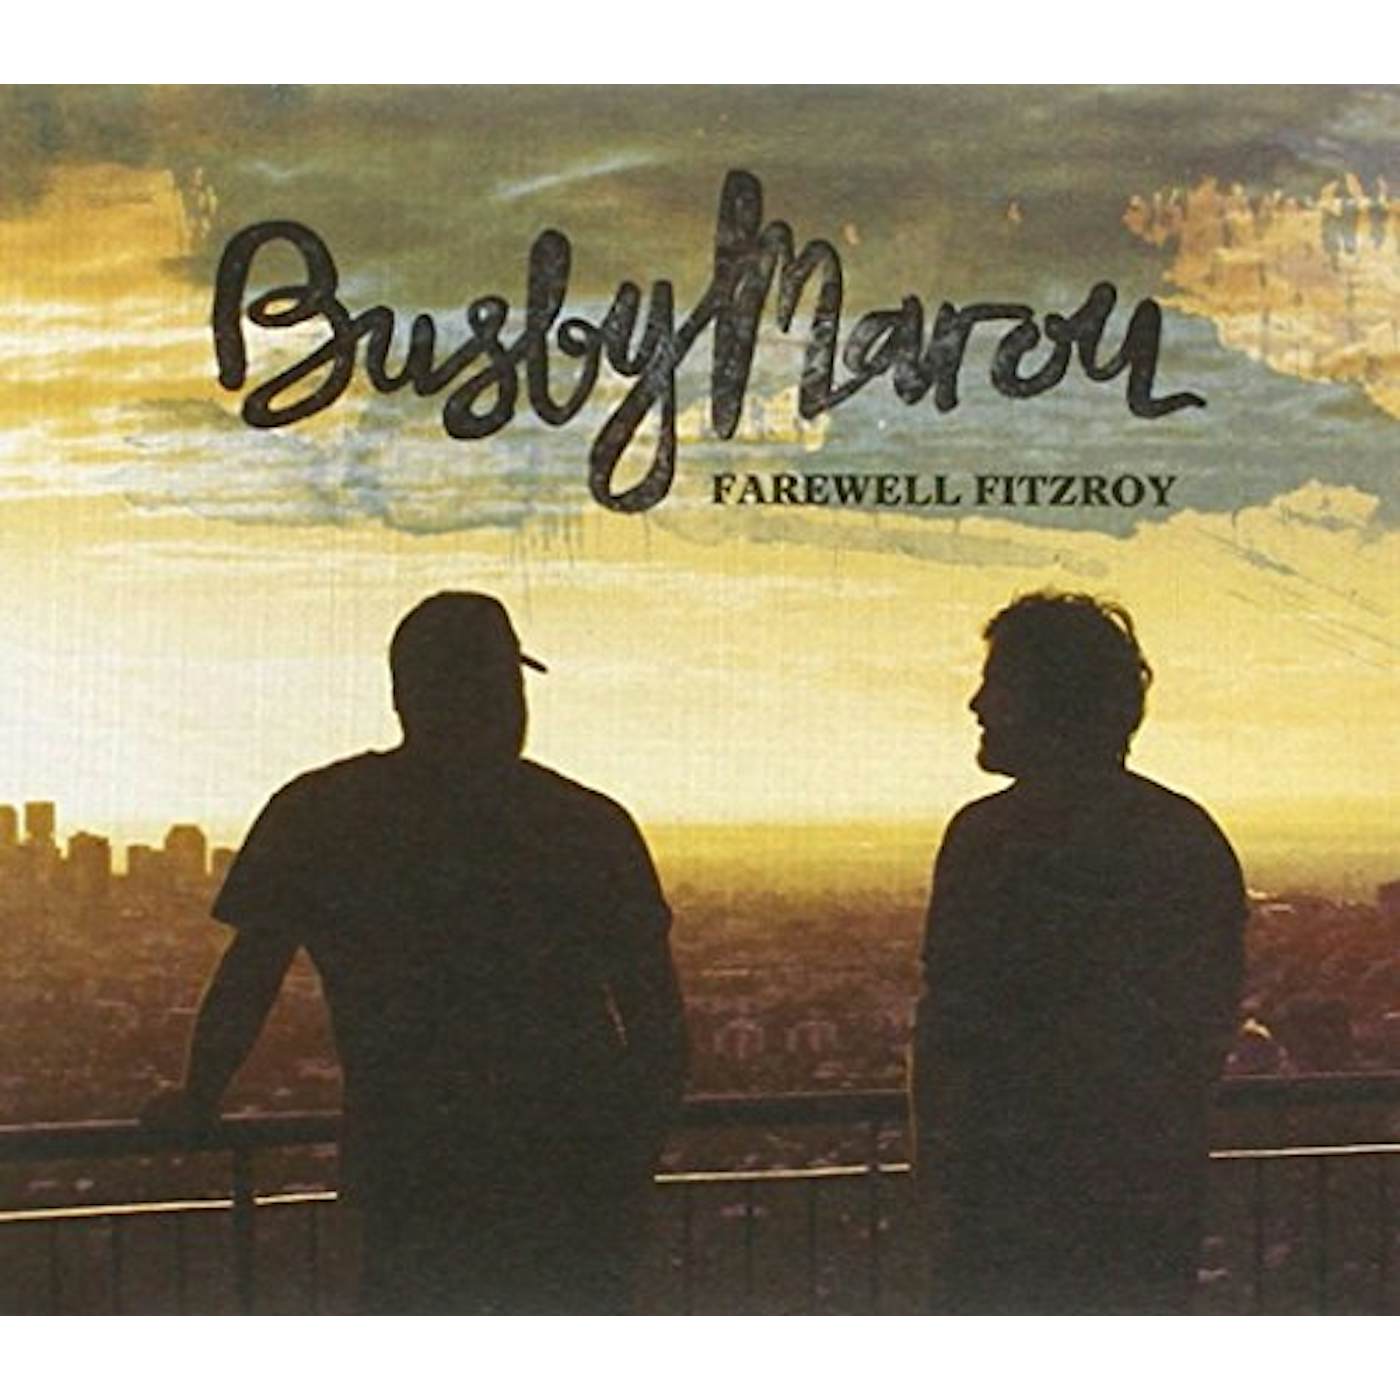 Busby Marou FAREWELL FITZROY CD